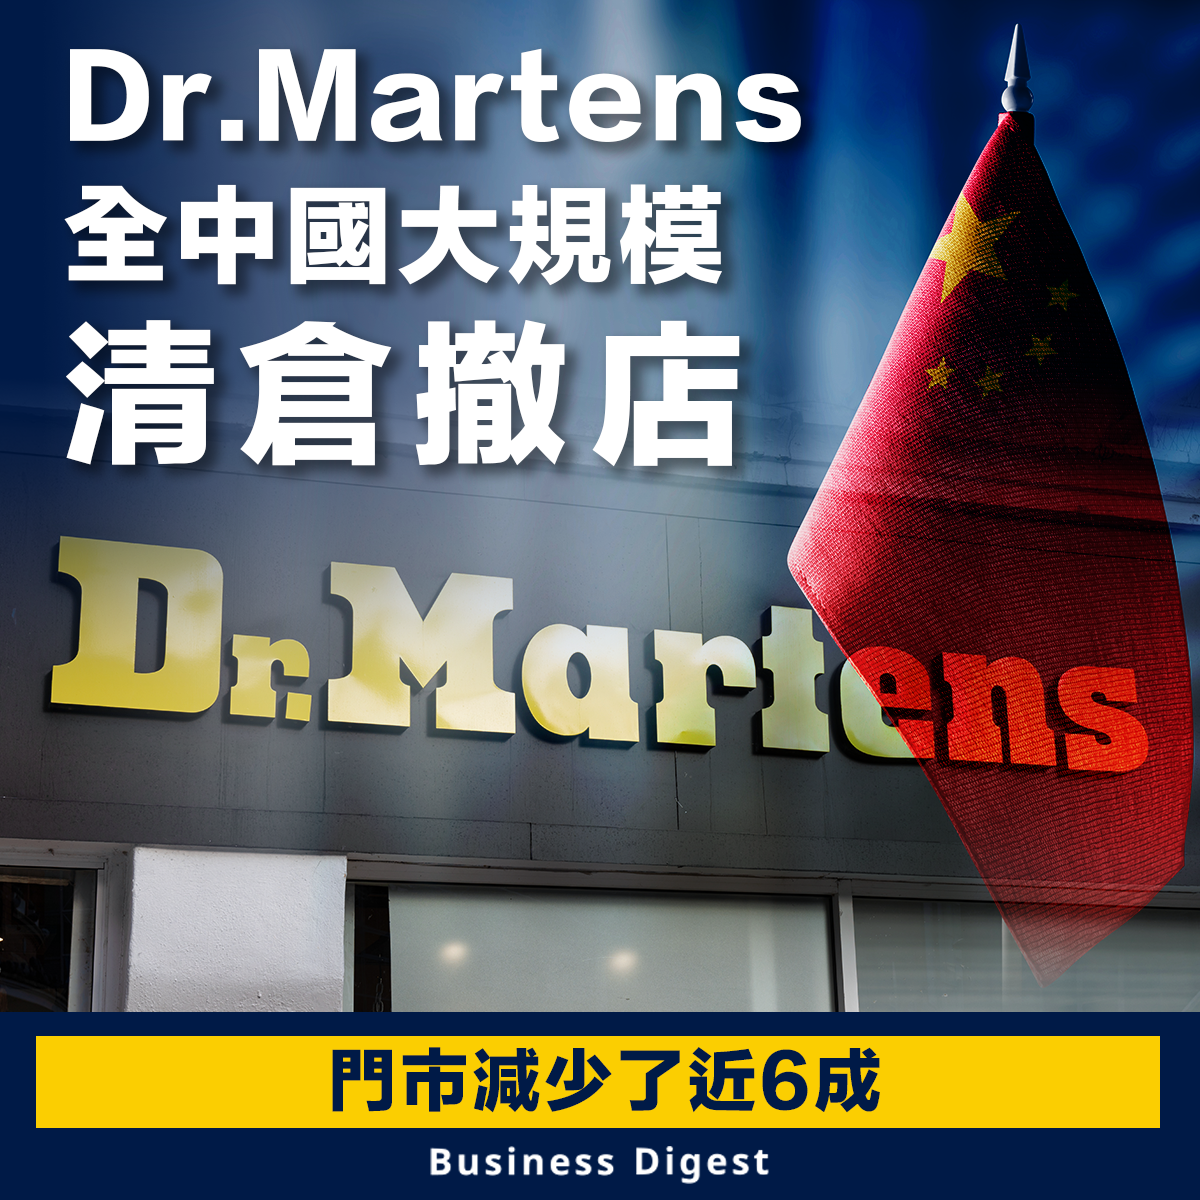 Dr.Martens全中國大規模清倉撤店